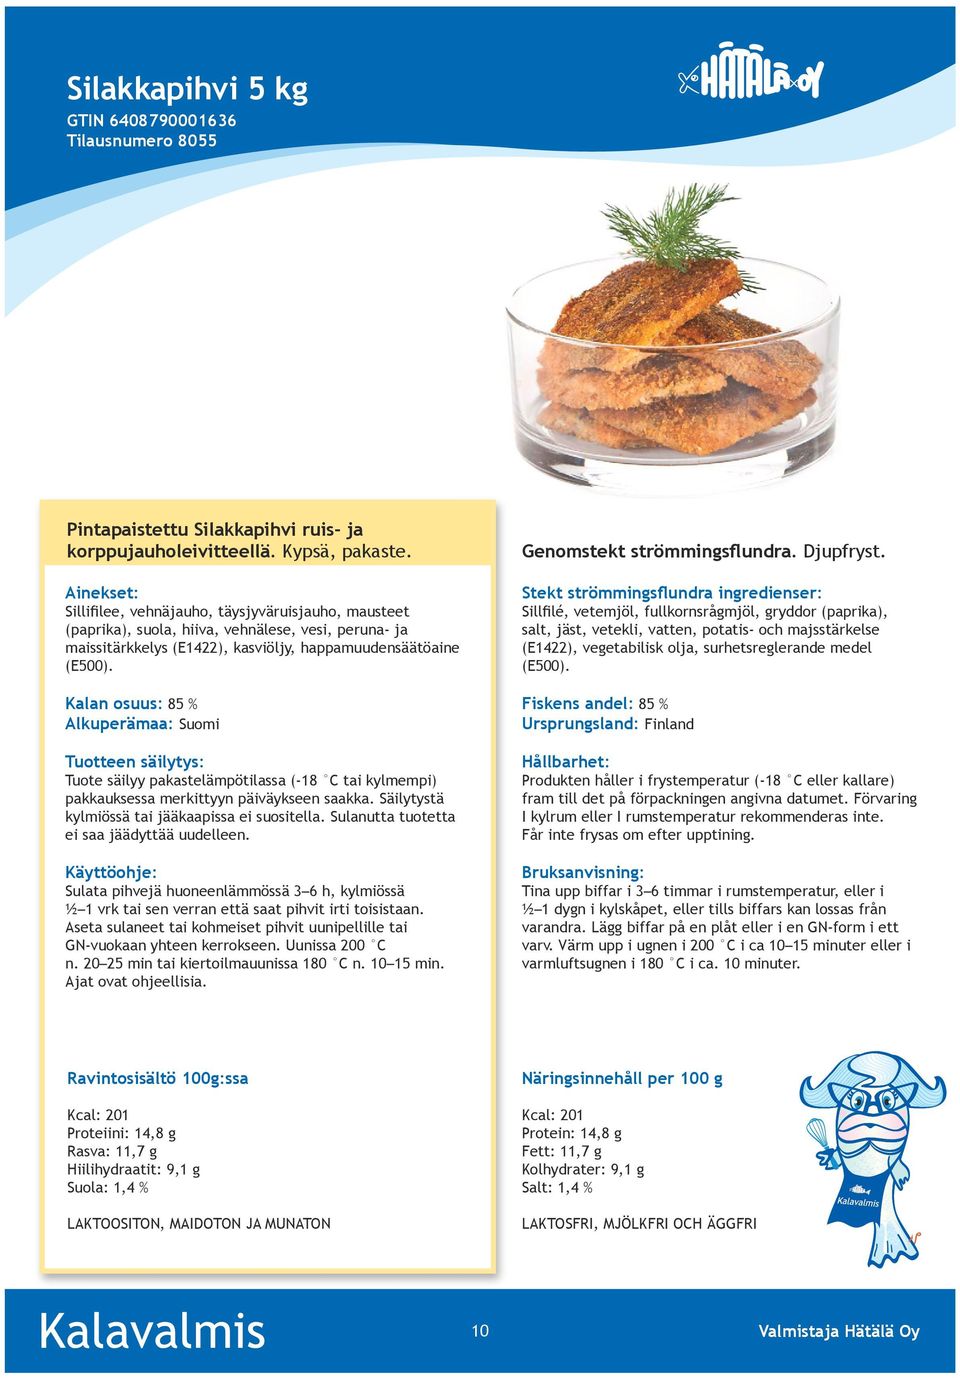 Kalan osuus: 85 % Alkuperämaa: Suomi Tuotteen säilytys: Tuote säilyy pakastelämpötilassa (-18 C tai kylmempi) pakkauksessa merkittyyn päiväykseen saakka.